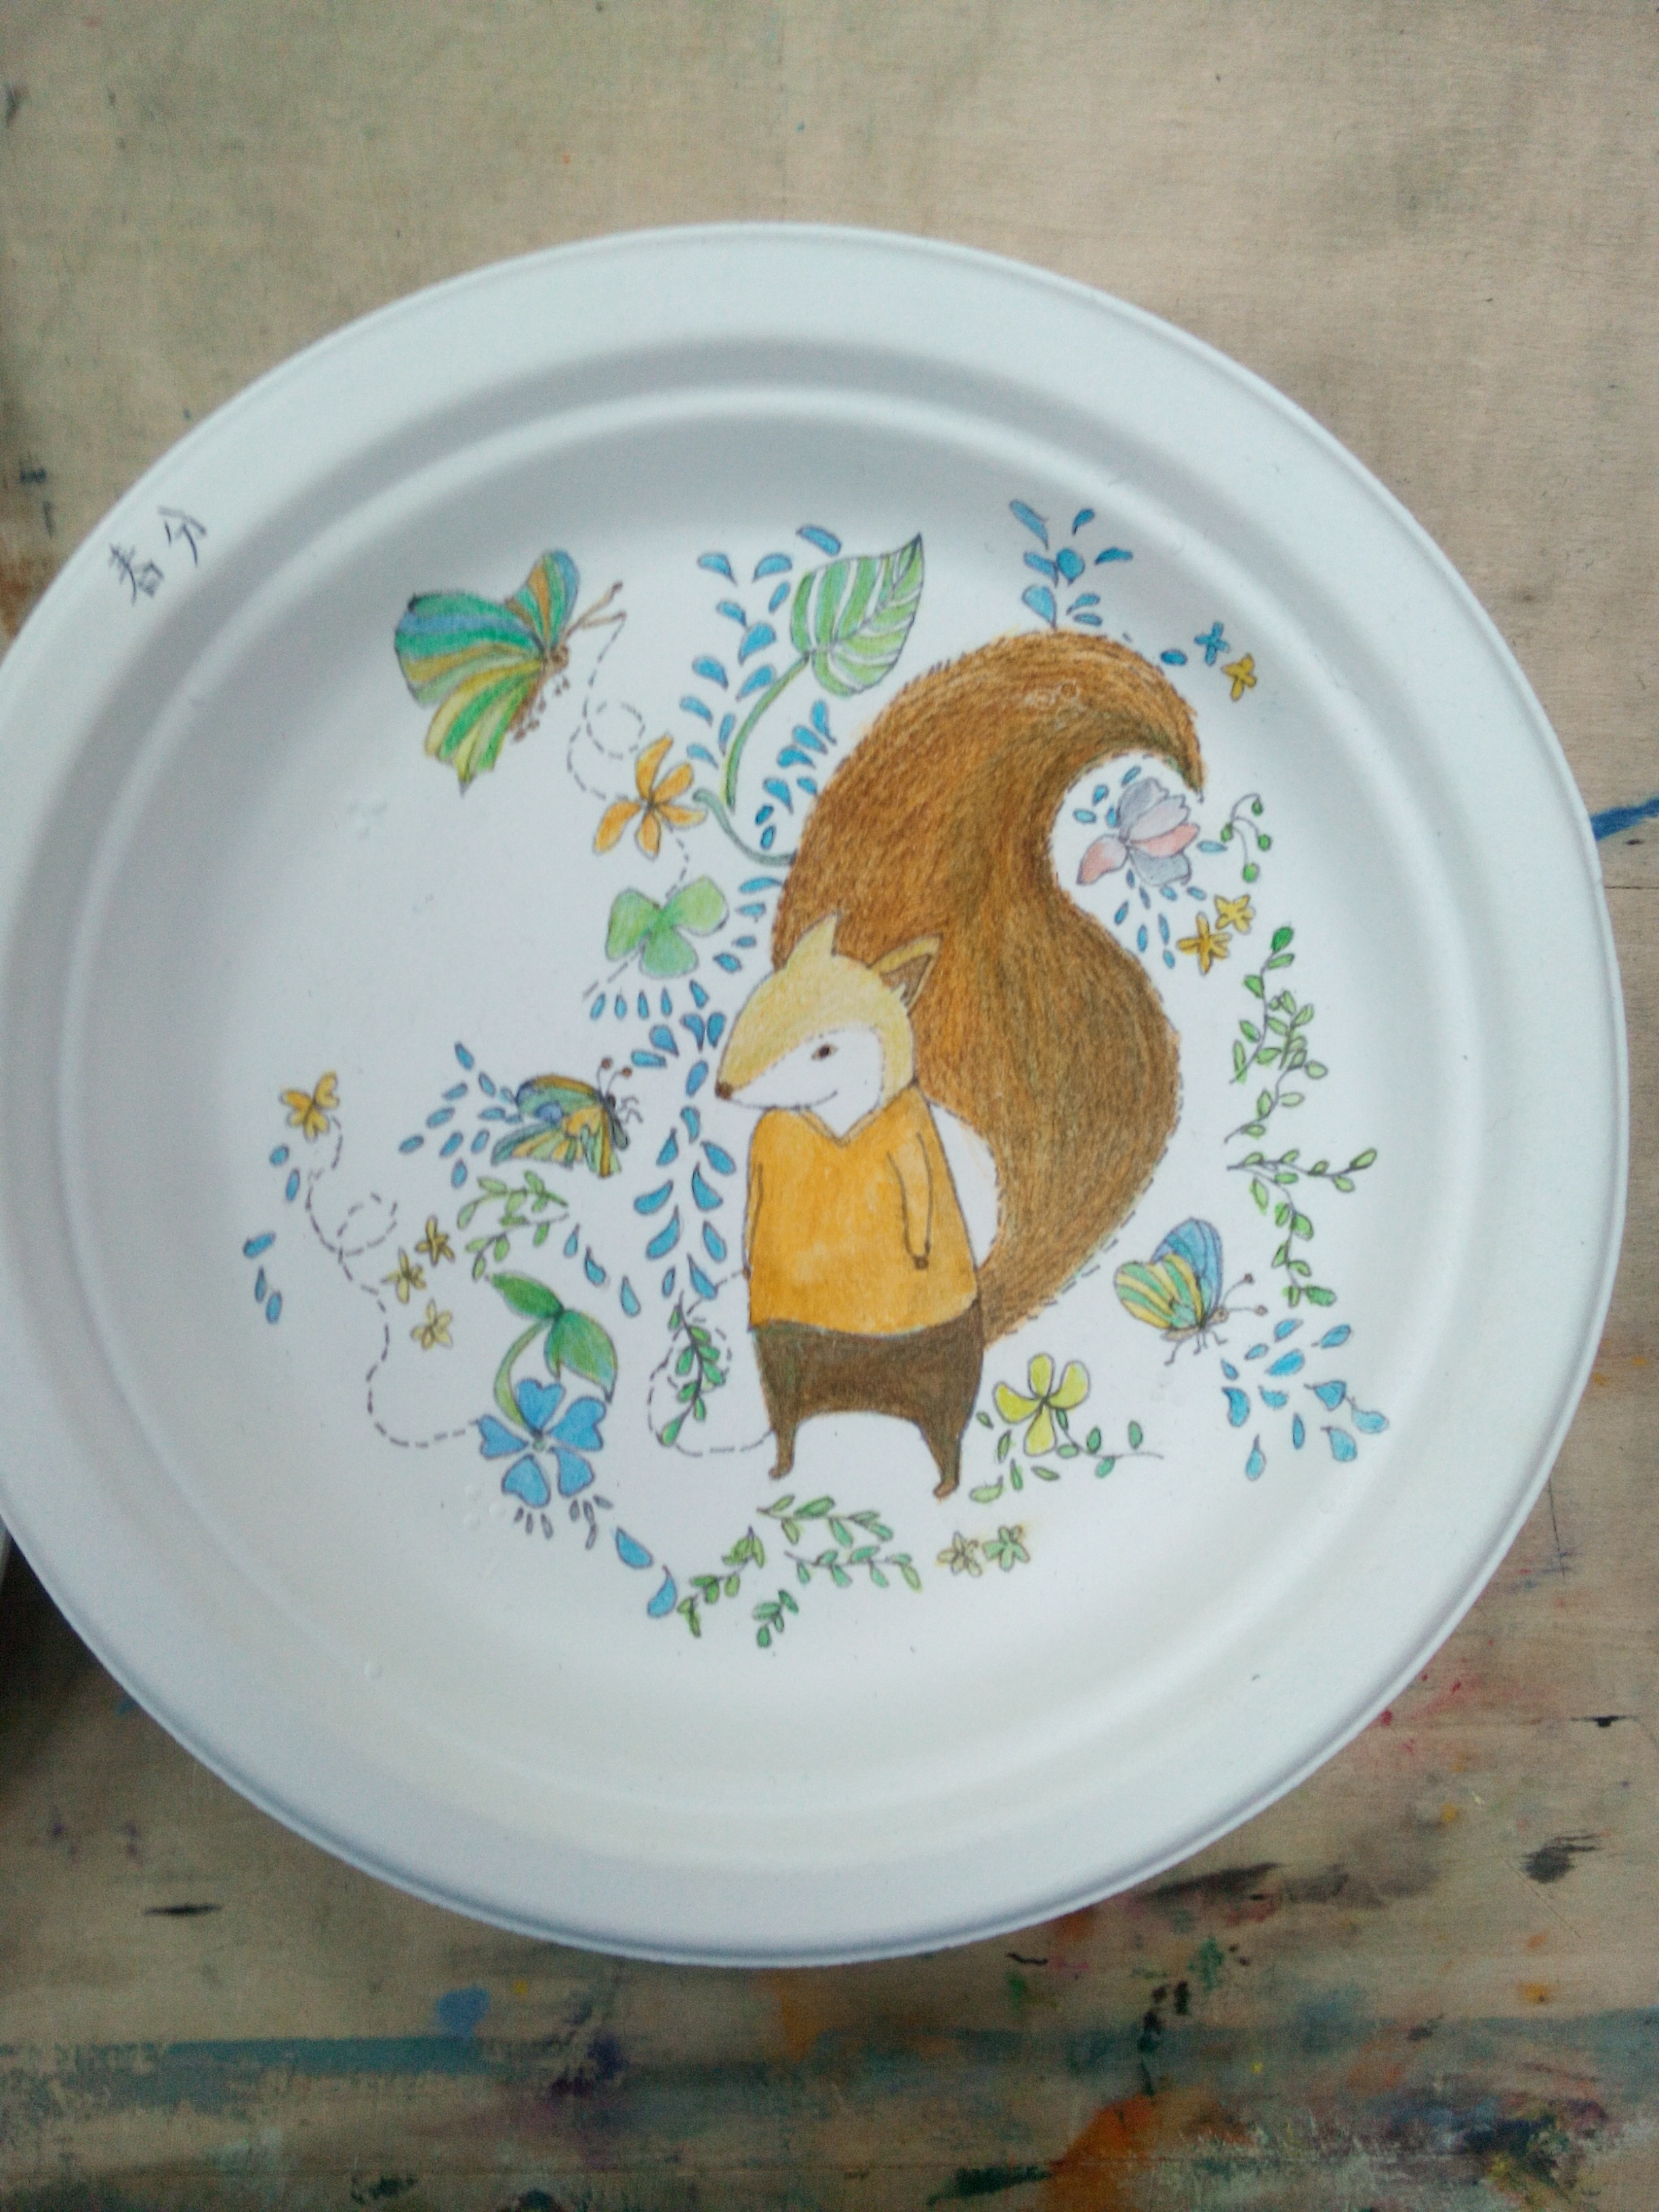 盘子画中国风 手绘图片